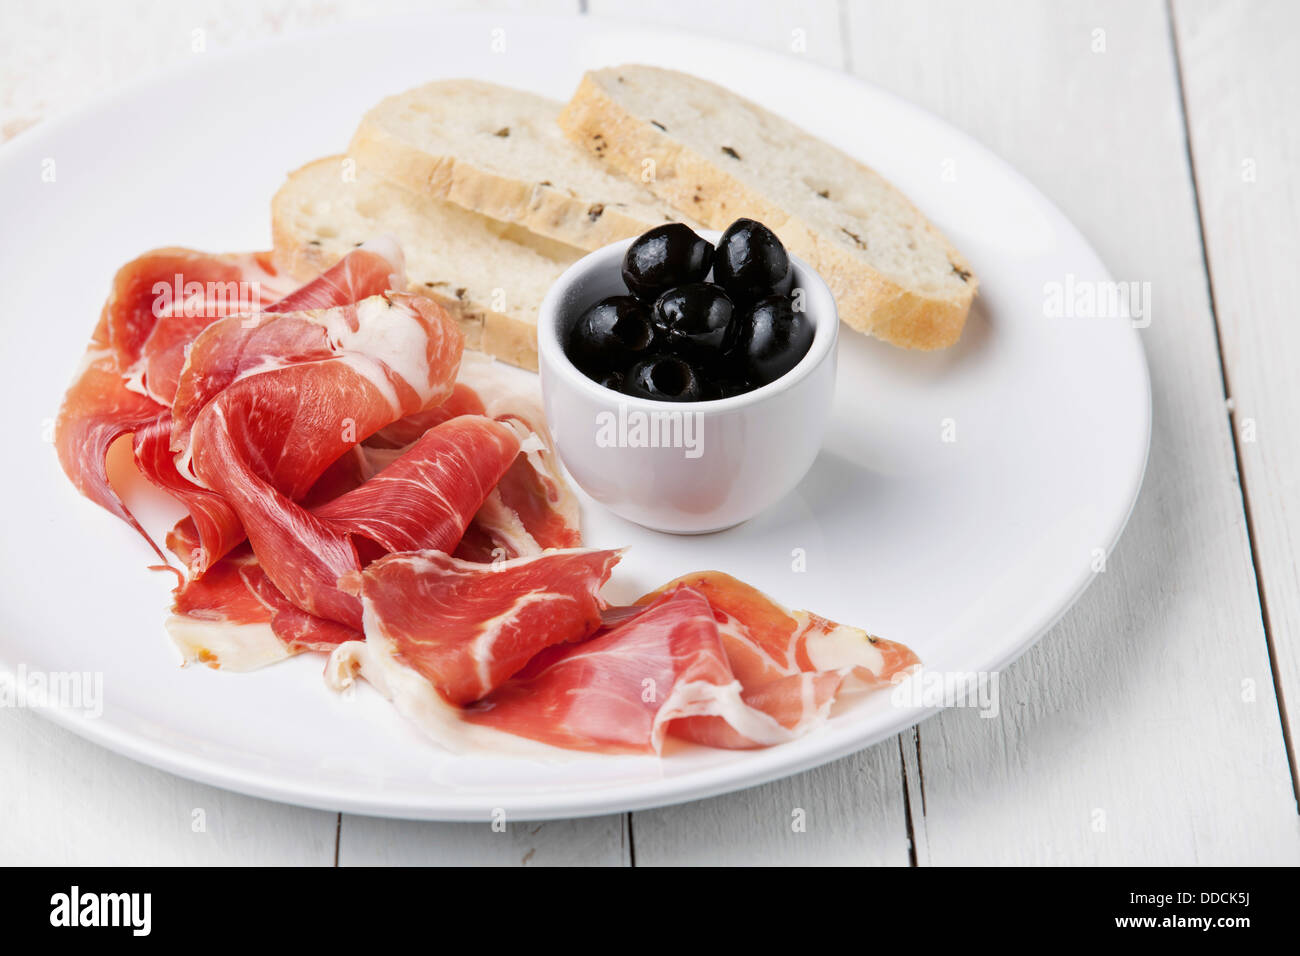 Tranches de jambon, olives noires et pain ciabatta on white plate Banque D'Images